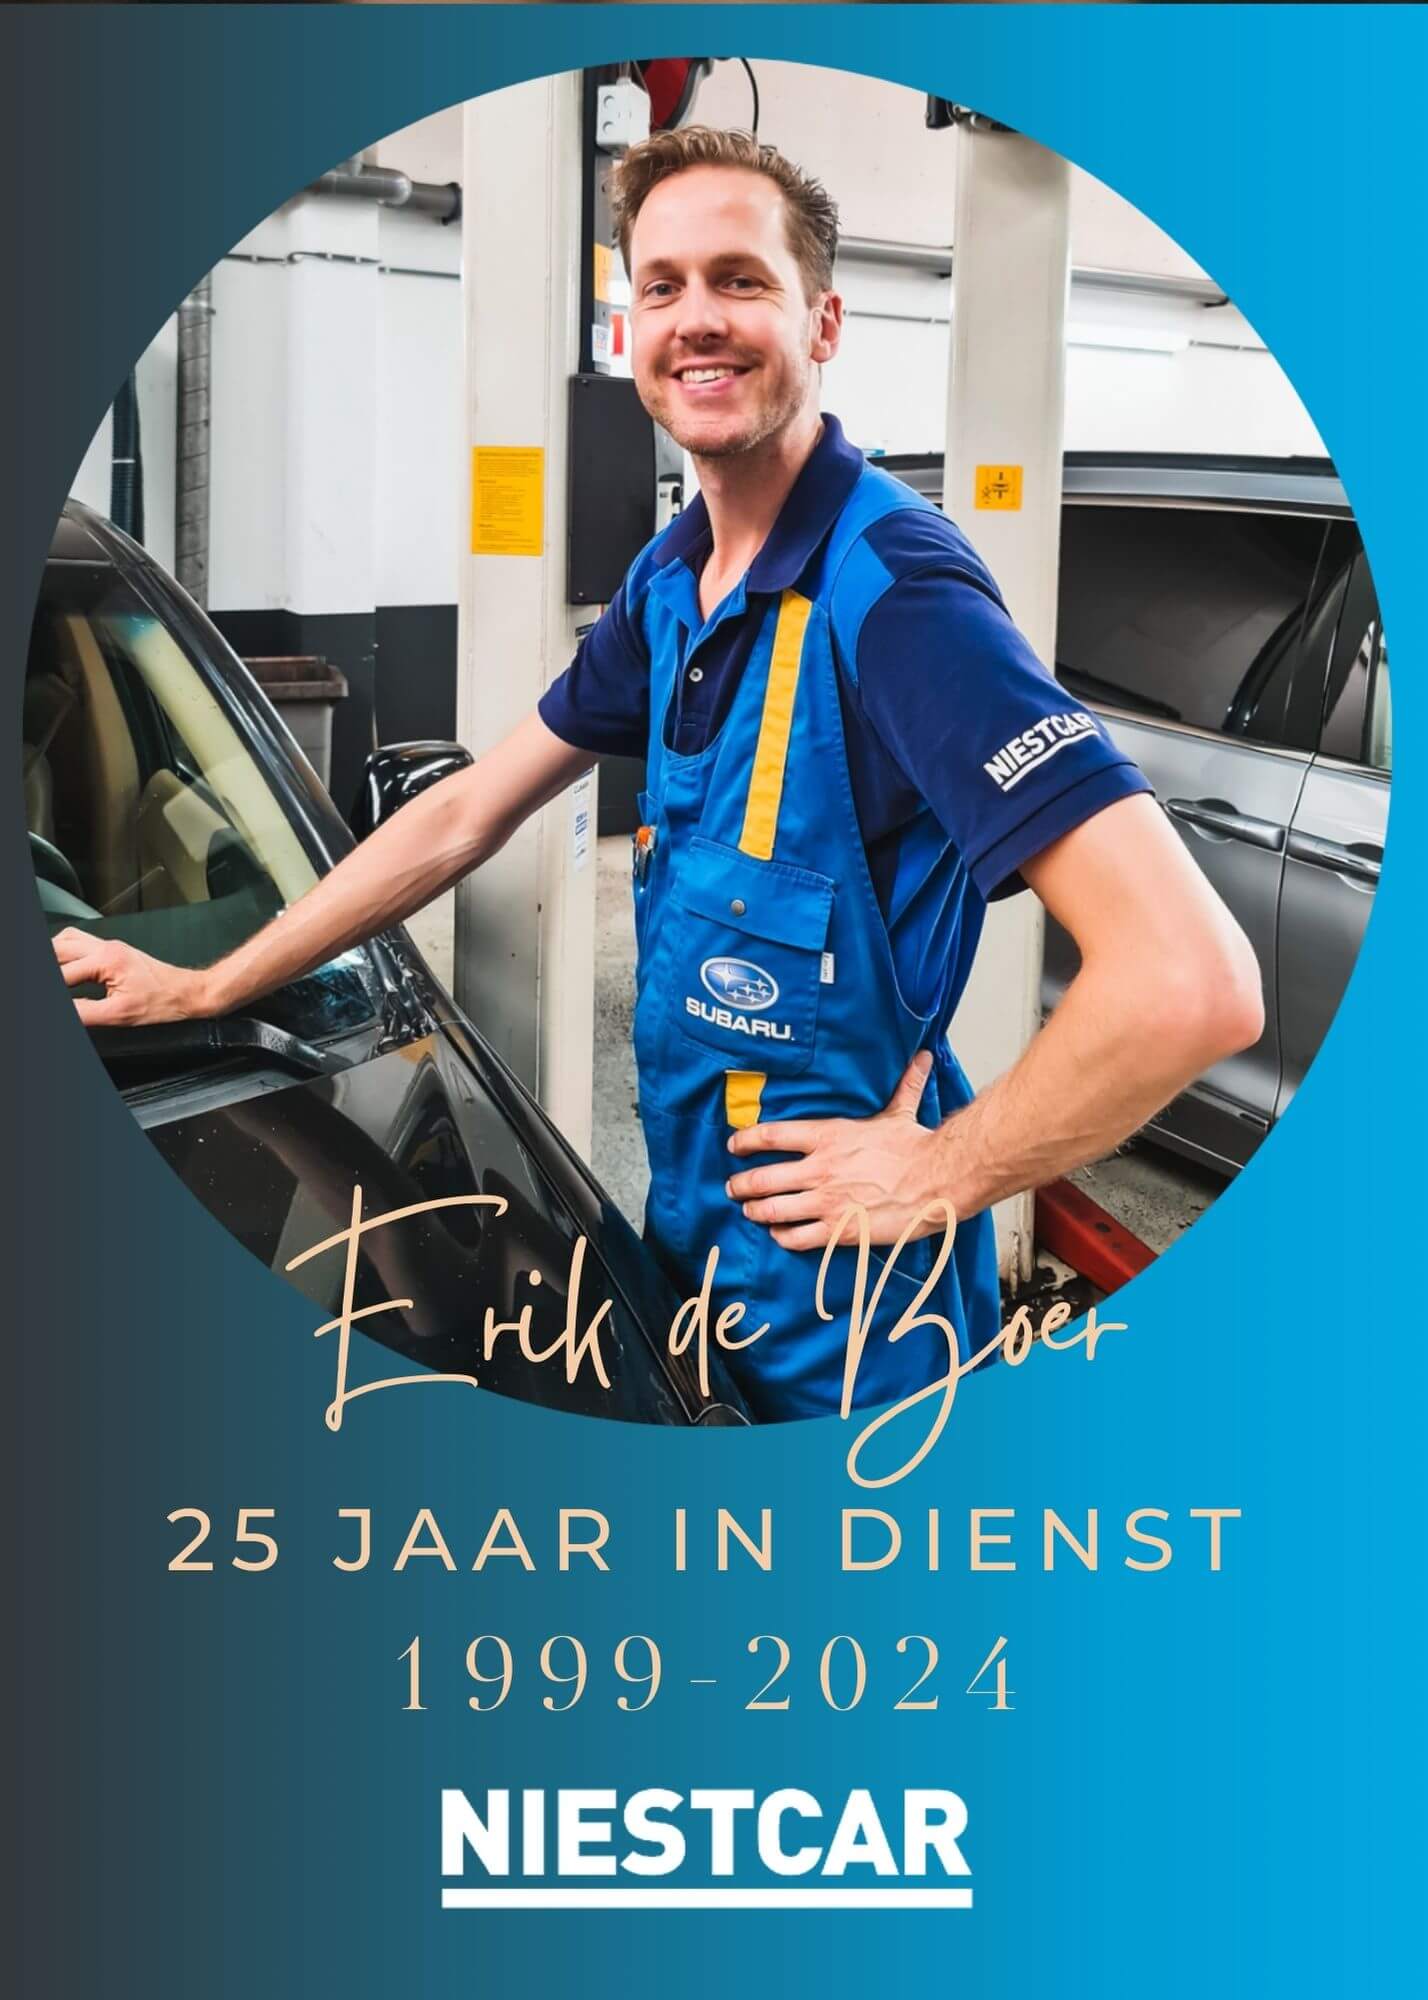 Erik de Boer 25 jaar in dienst bij autobedrijf Niestcar in Heemskerk.